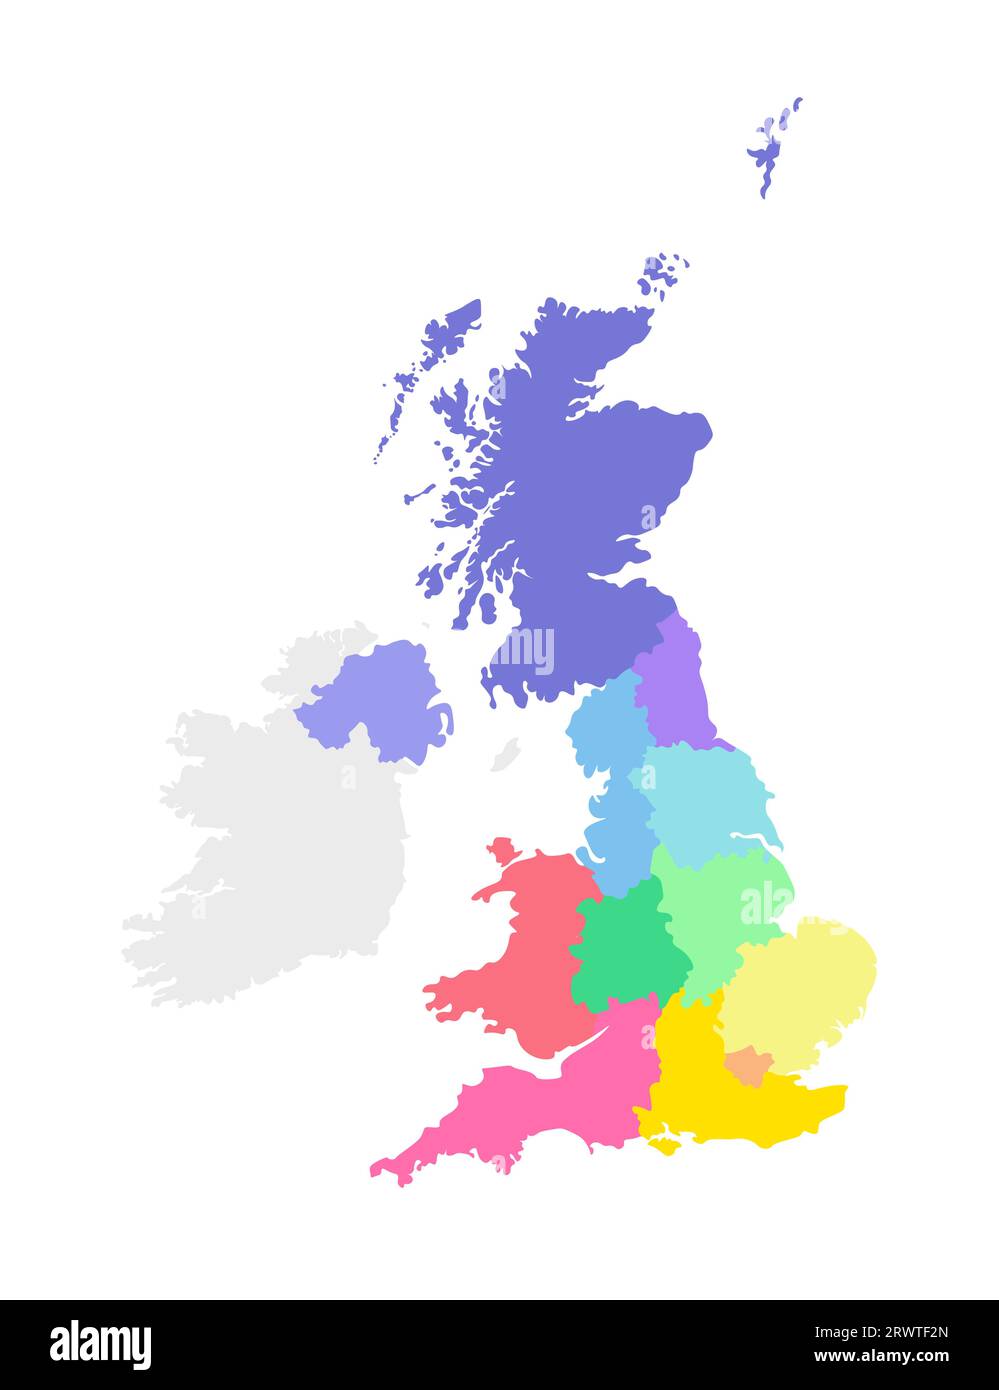 Illustration vectorielle isolée d'une carte administrative simplifiée du Royaume-Uni de Grande-Bretagne et d'Irlande du Nord. Frontières des régions. MUL Illustration de Vecteur